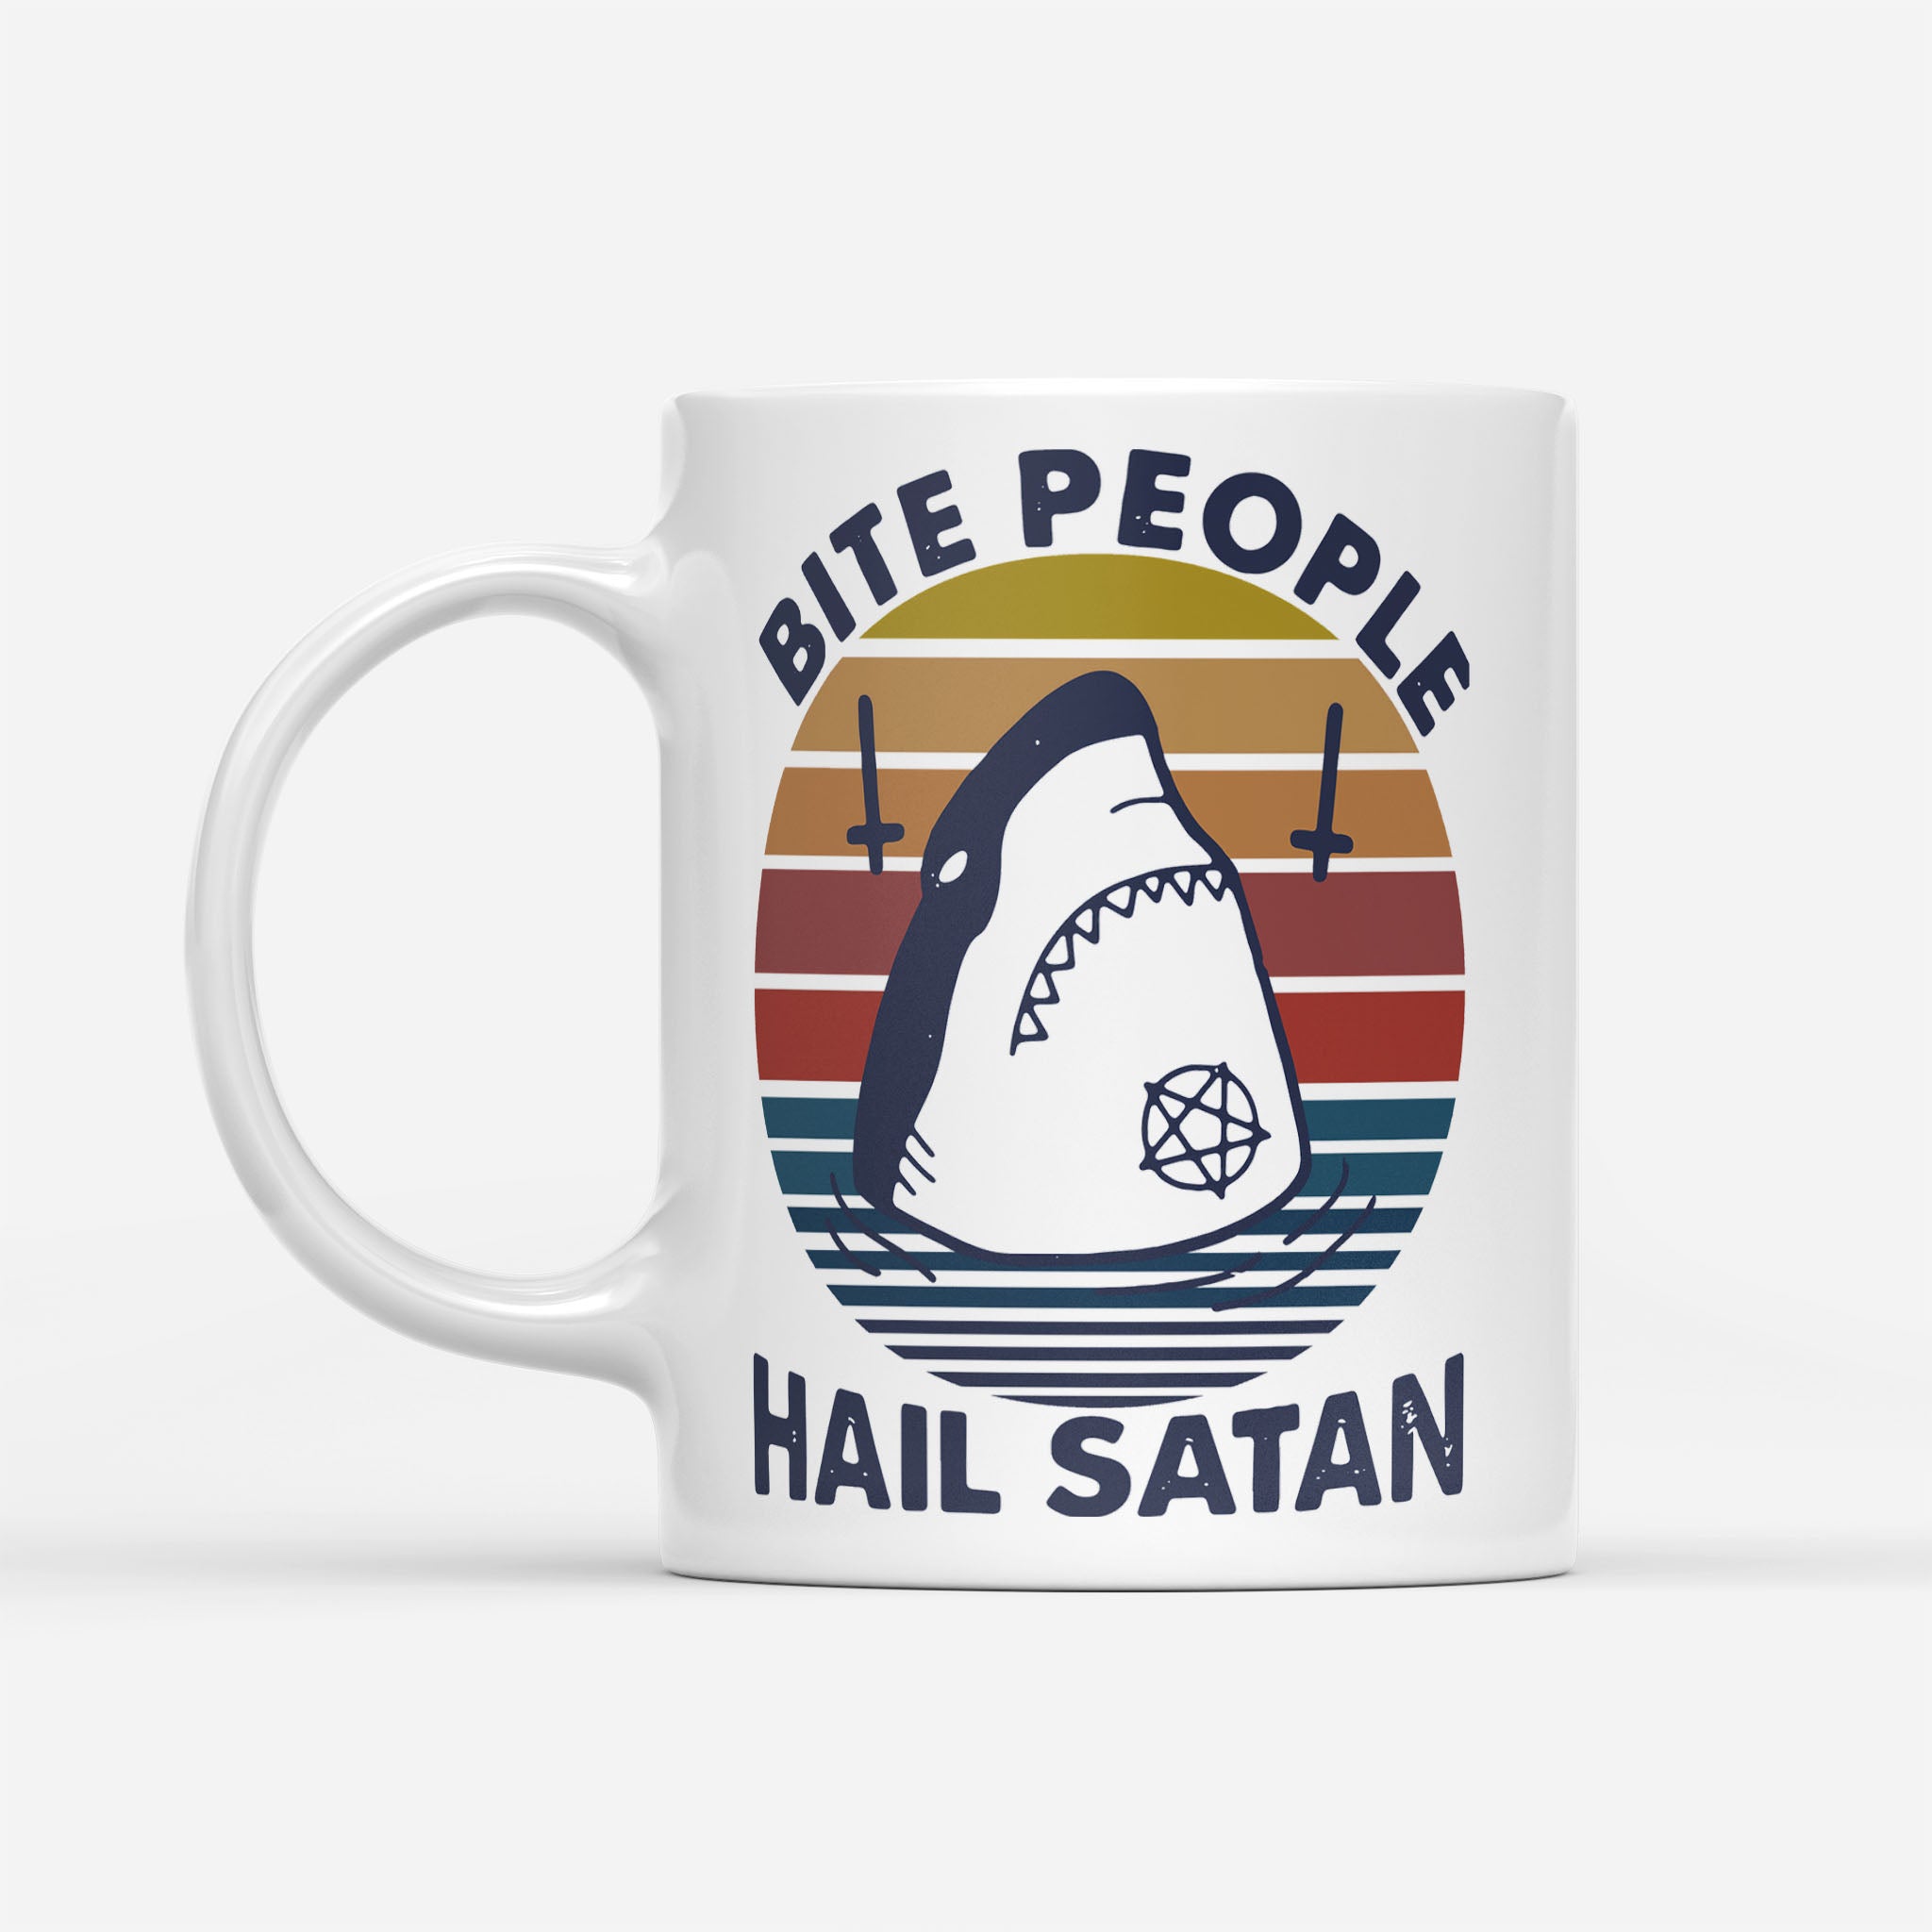 Shark Bite People Hail Satan Vintage - White Mug